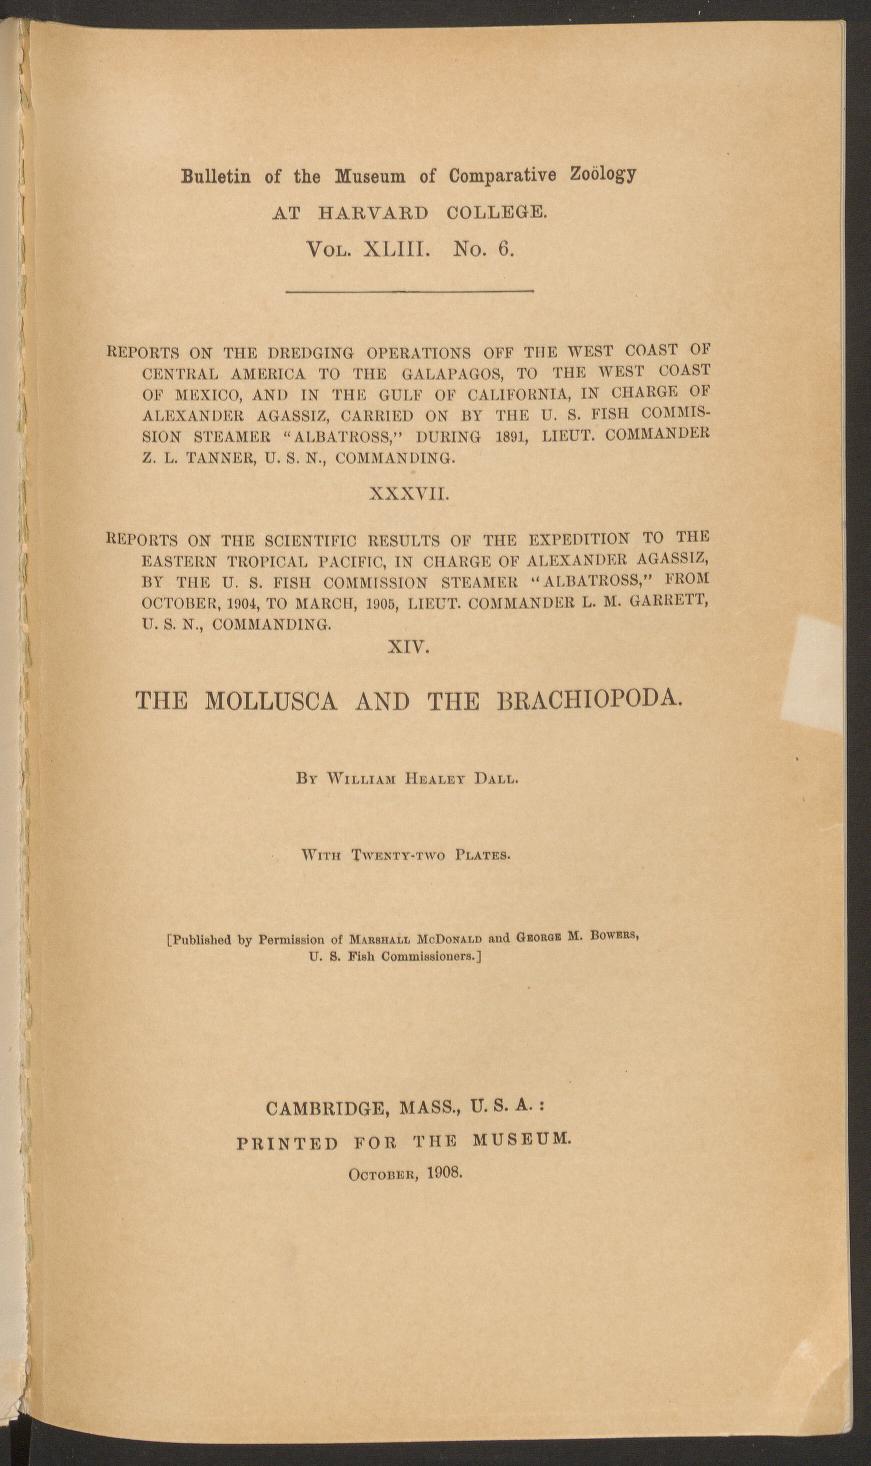 Media type: text; Dall 1908 Description: MCZ Bulletin Vol. XLIII no. 6;